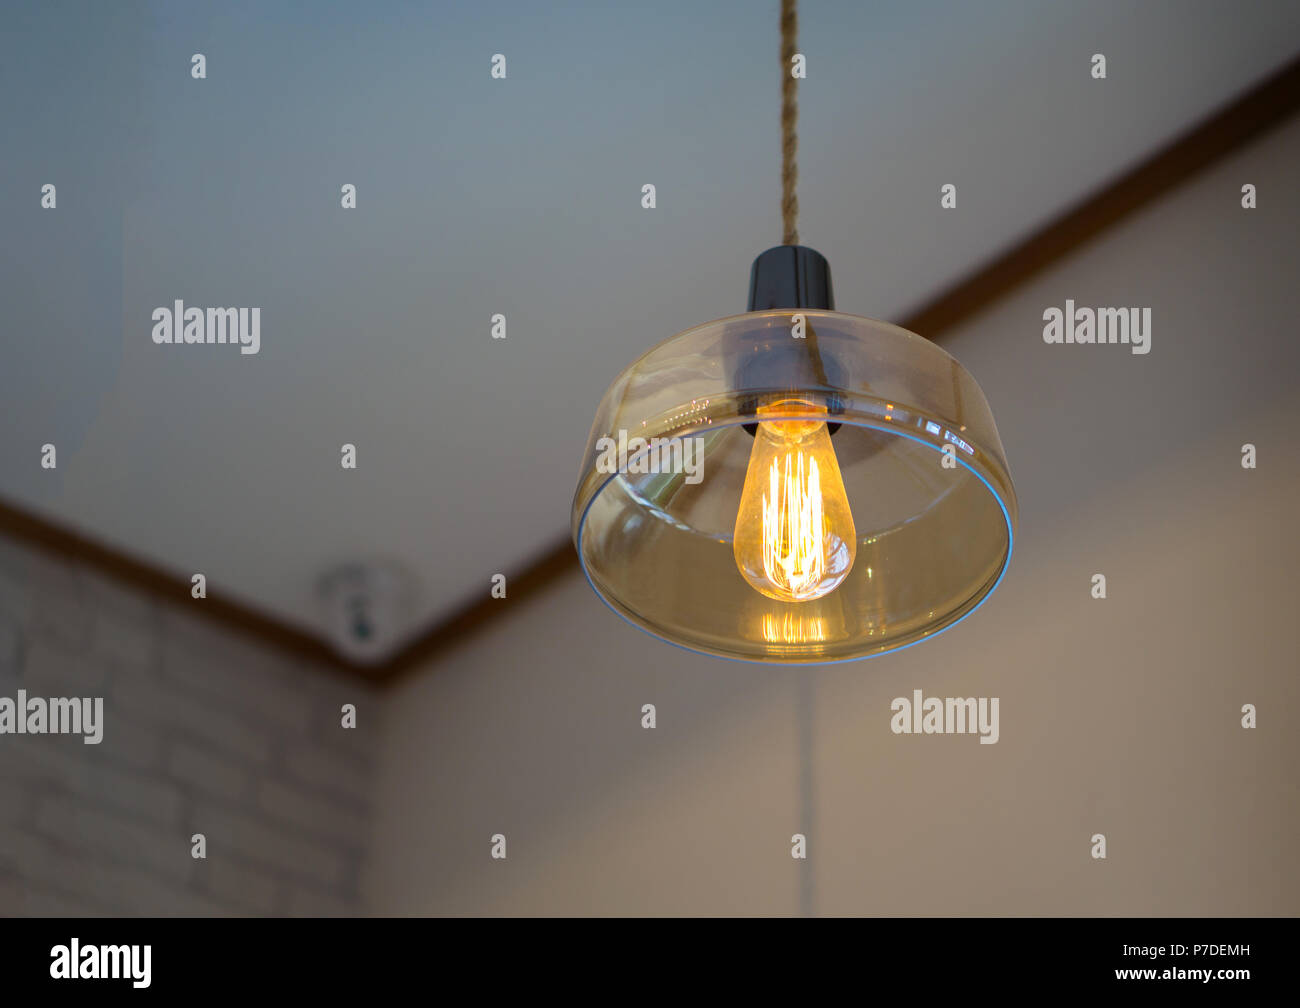 Eine Glühbirne, Glühlampe oder Glühlampen Globe ist ein elektrisches Licht  mit einer Leitung Heizfaden erhitzt eine so hohe Temperatur Stockfotografie  - Alamy